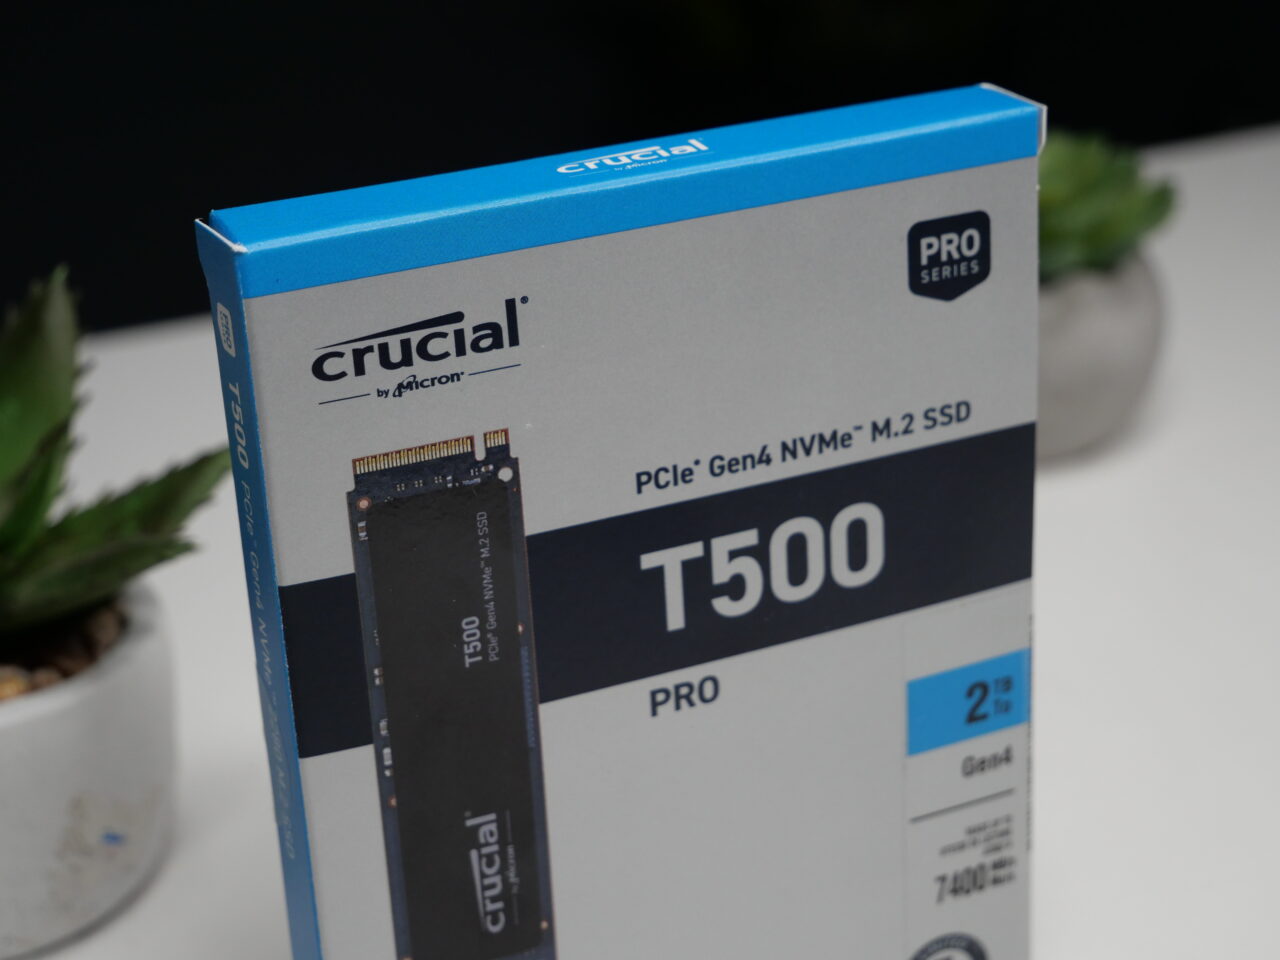 Niebiesko-białe opakowanie dysku SSD marki Crucial T500 Pro PCIe Gen4 NVMe M.2 o pojemności 2 TB, z widocznym zdjęciem produktu na froncie, stoi na stole obok doniczki z zieloną rośliną na tle rozmytego białego tła.